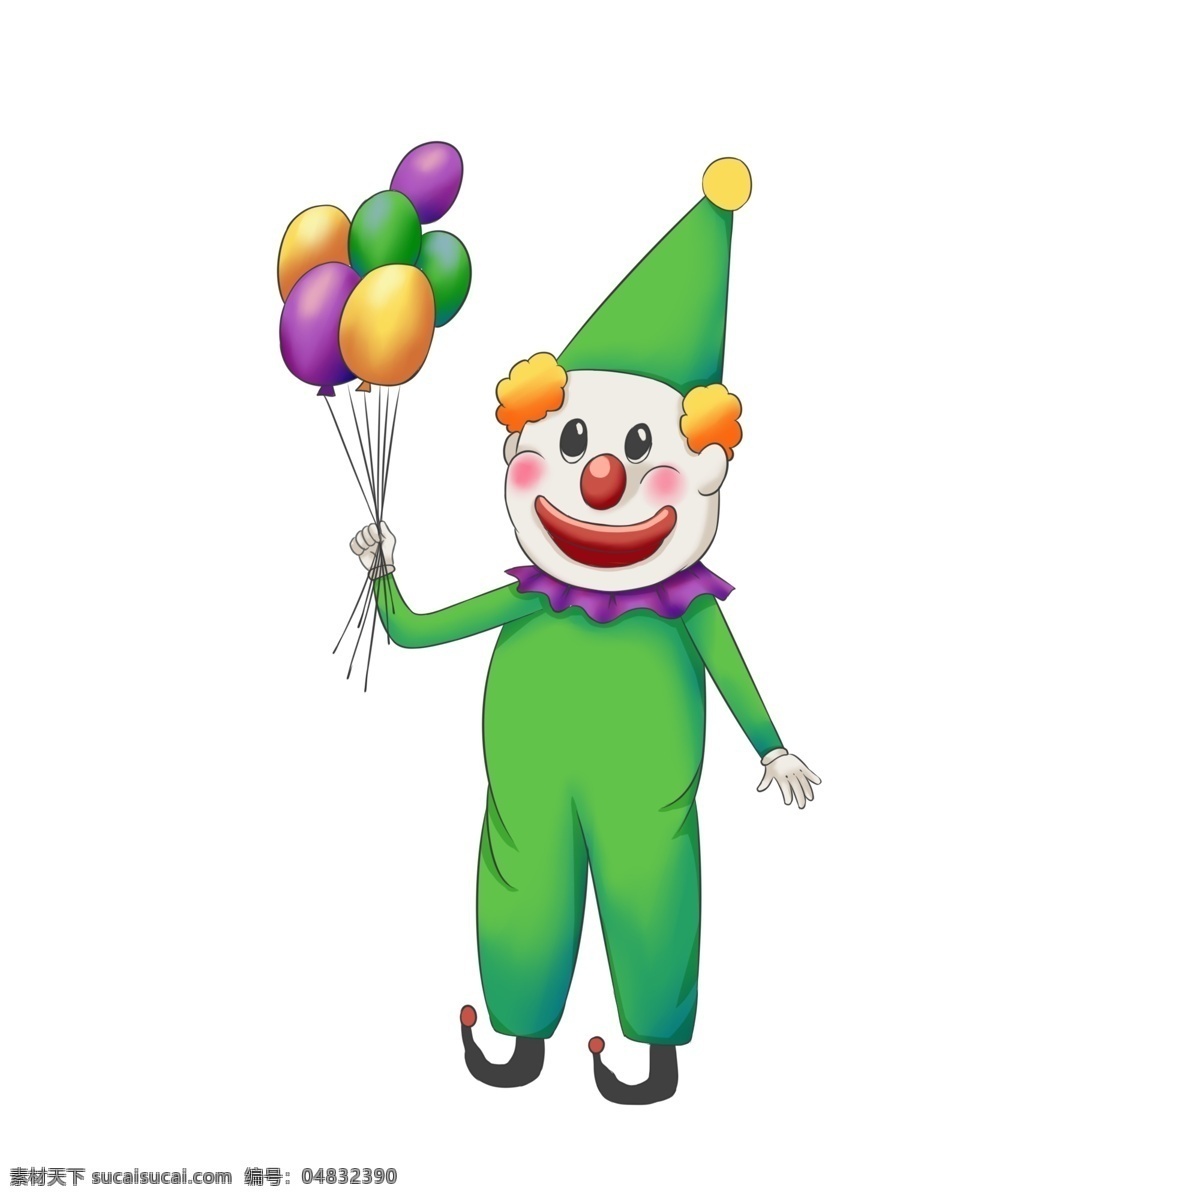 愚人节 小丑 气球 飞行 彩色 彩色小丑 绿色小丑 可爱的小丑 拿气球的小丑